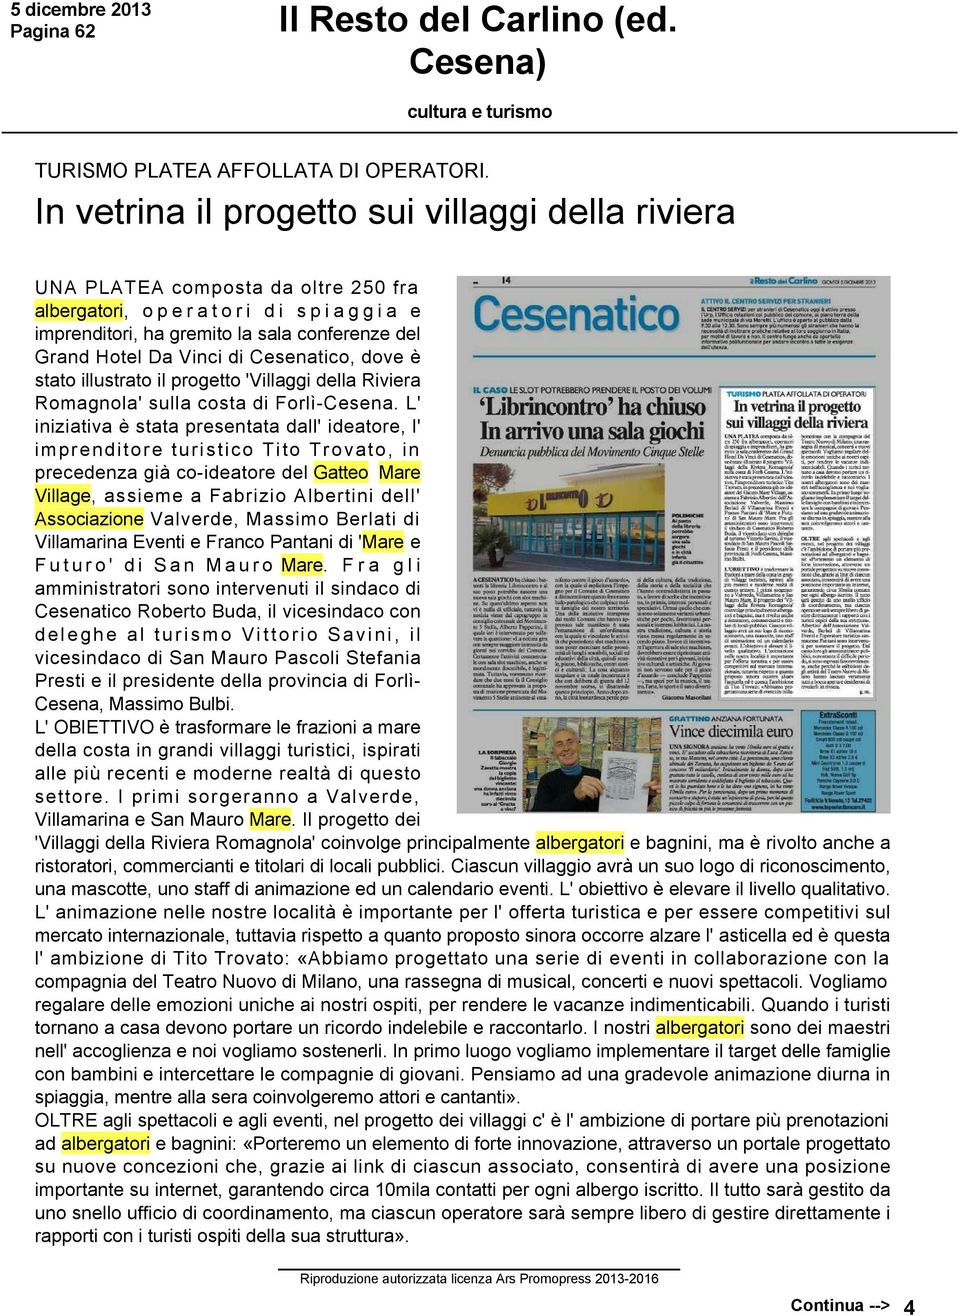 Cesenatico, dove è stato illustrato il progetto 'Villaggi della Riviera Romagnola' sulla costa di Forlì Cesena.